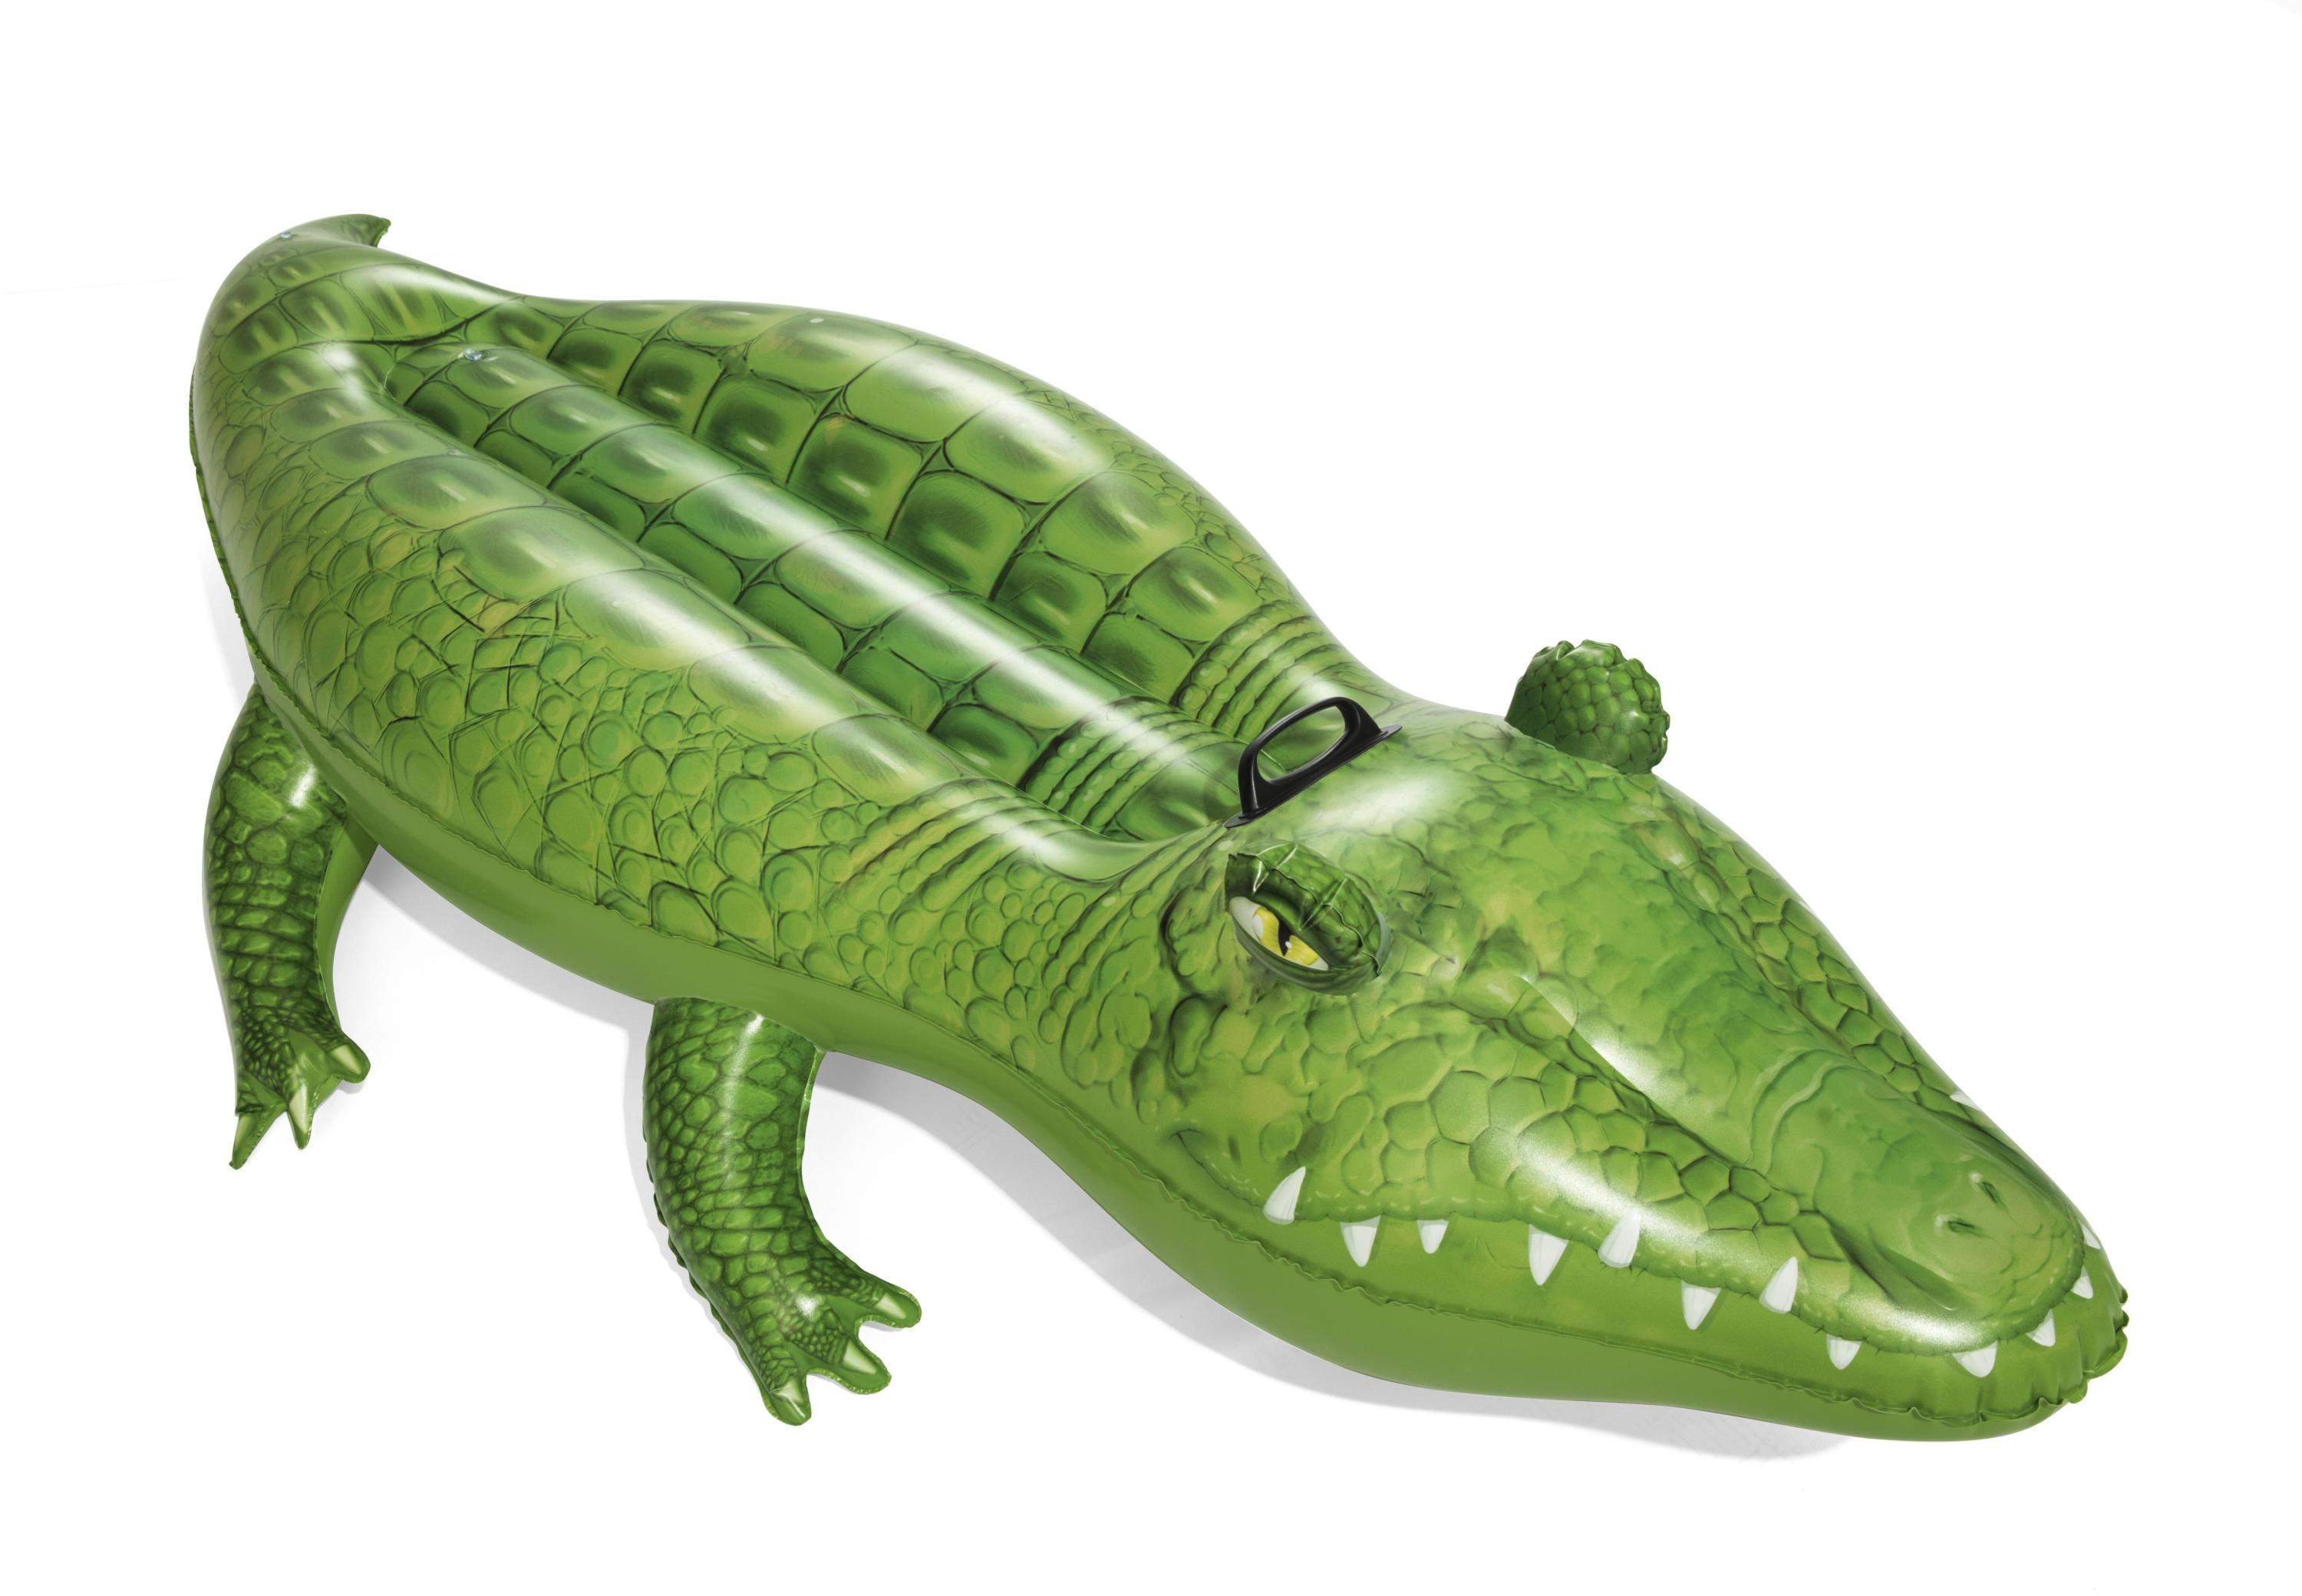 CROCODILE RIDER - Inflatable crocodile